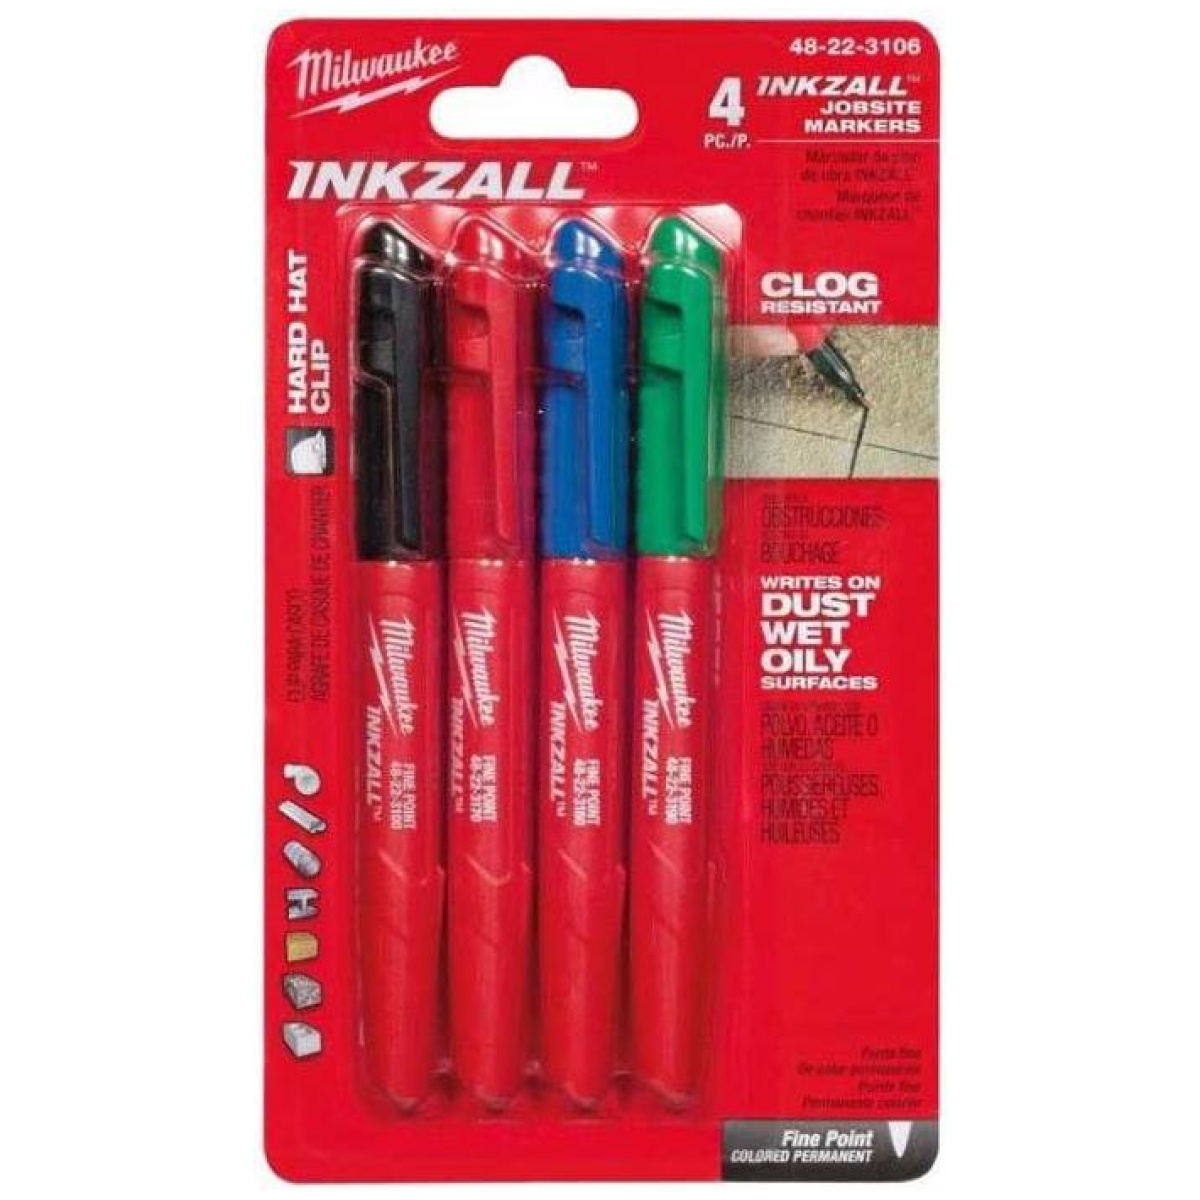 Pisaki zestaw markerów INKZALL (czarny, czerwony, niebieski, zielony) - MILWAUKEE 48223106